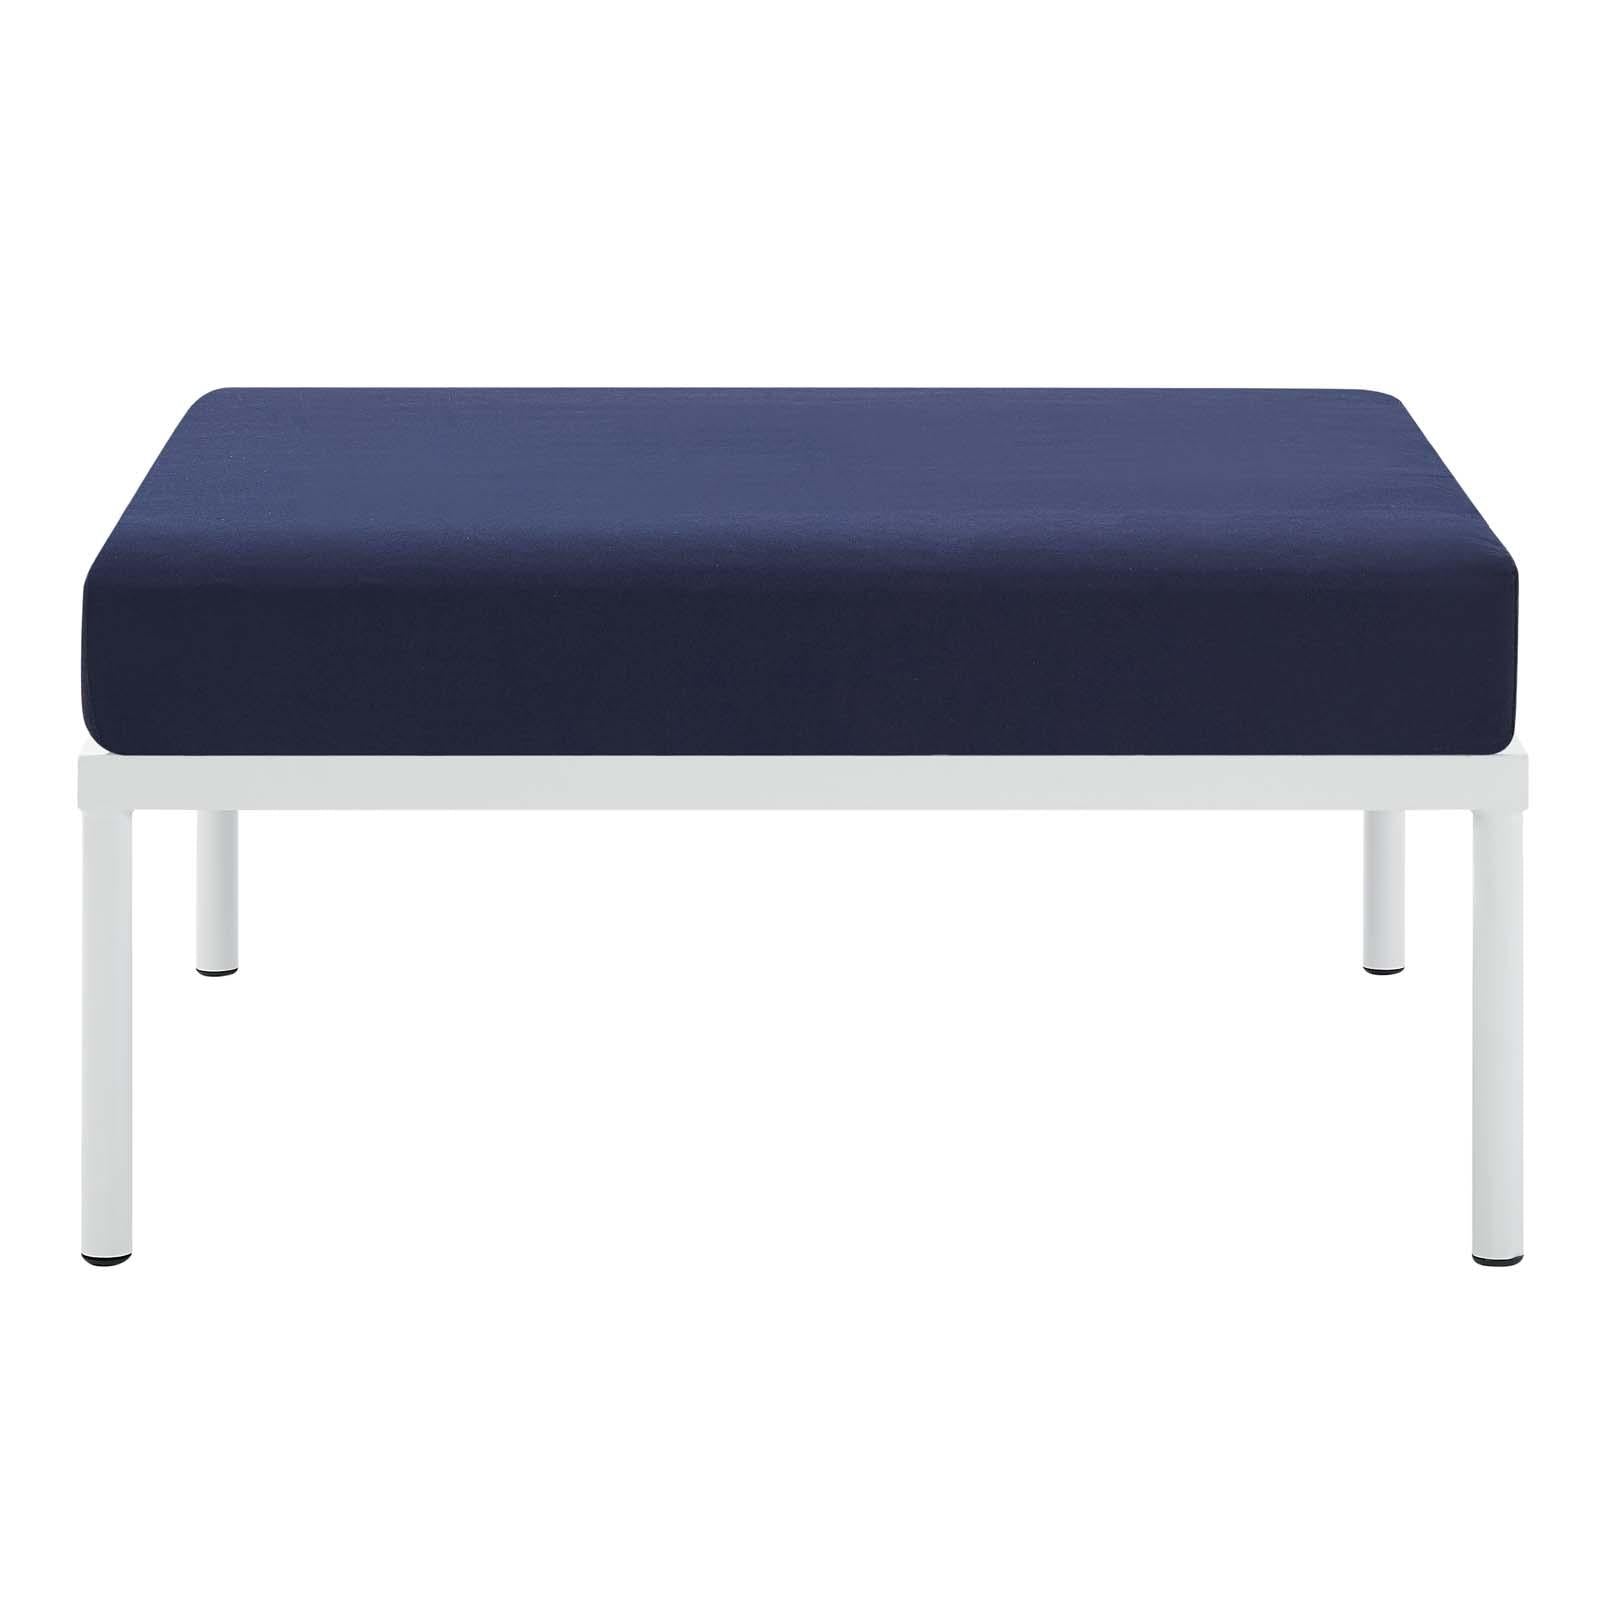 Modway Furniture Modern Harmony Sunbrella® Outdoor Patio Aluminum Ottoman - EEI-4969